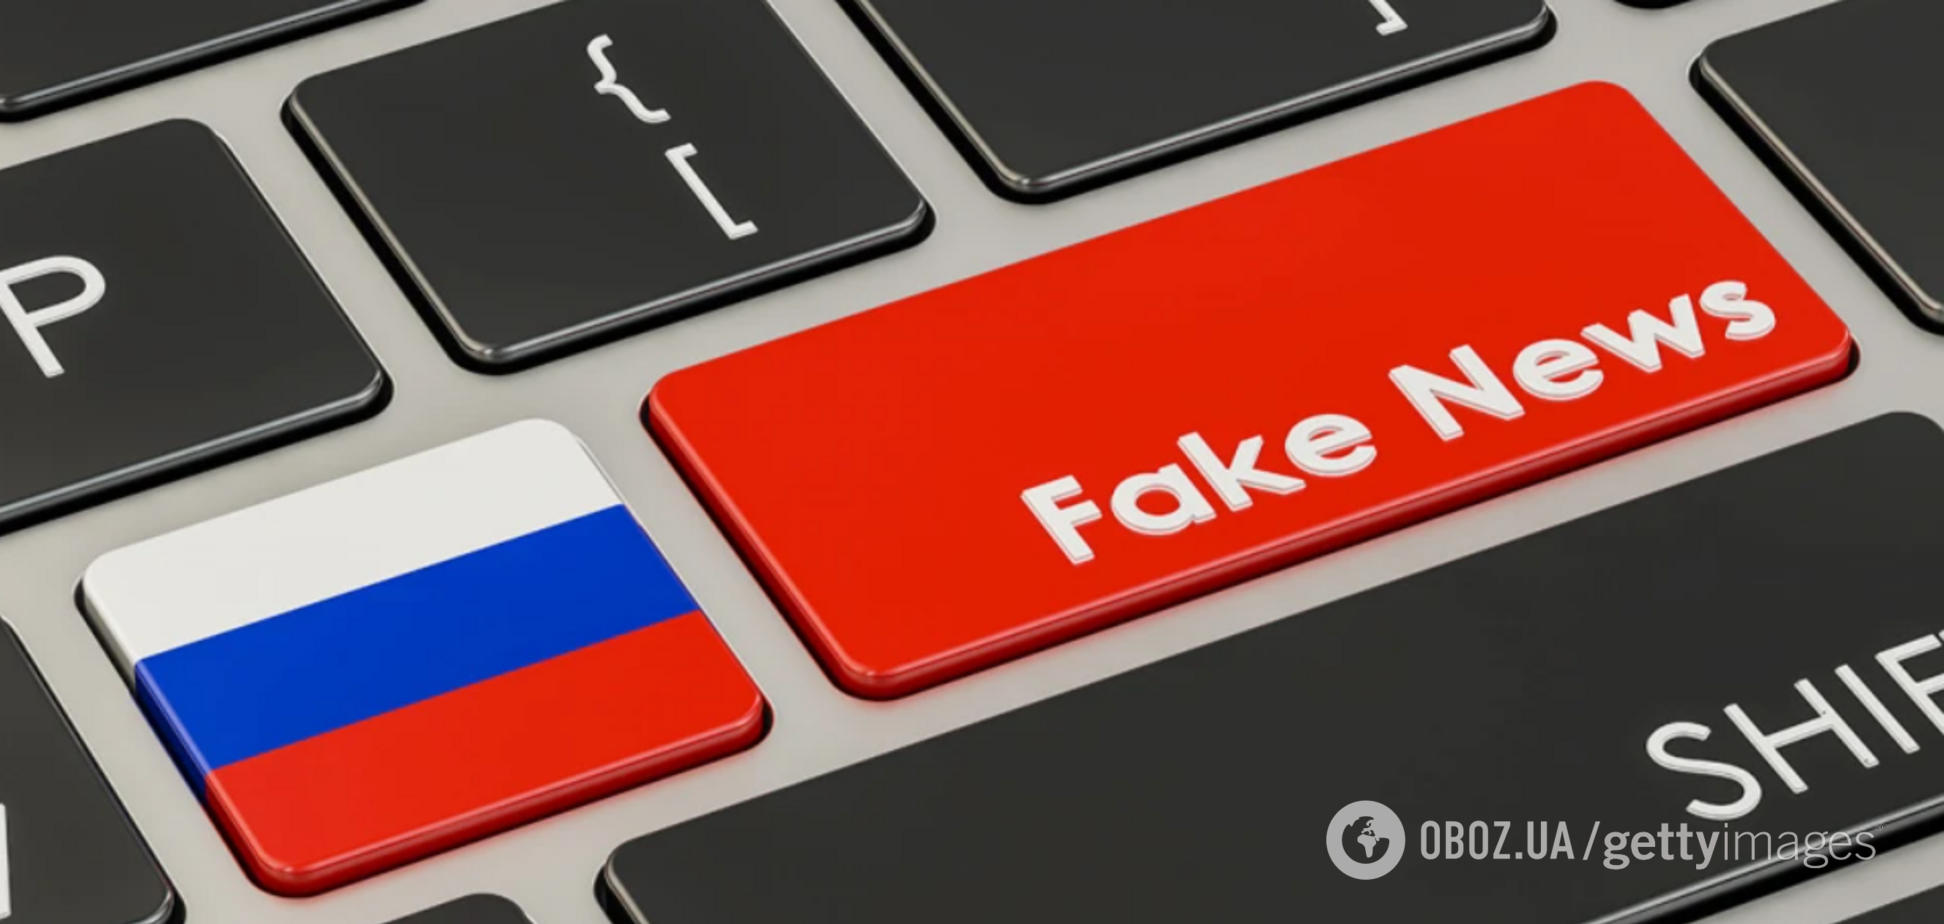 Фейки российской пропаганды